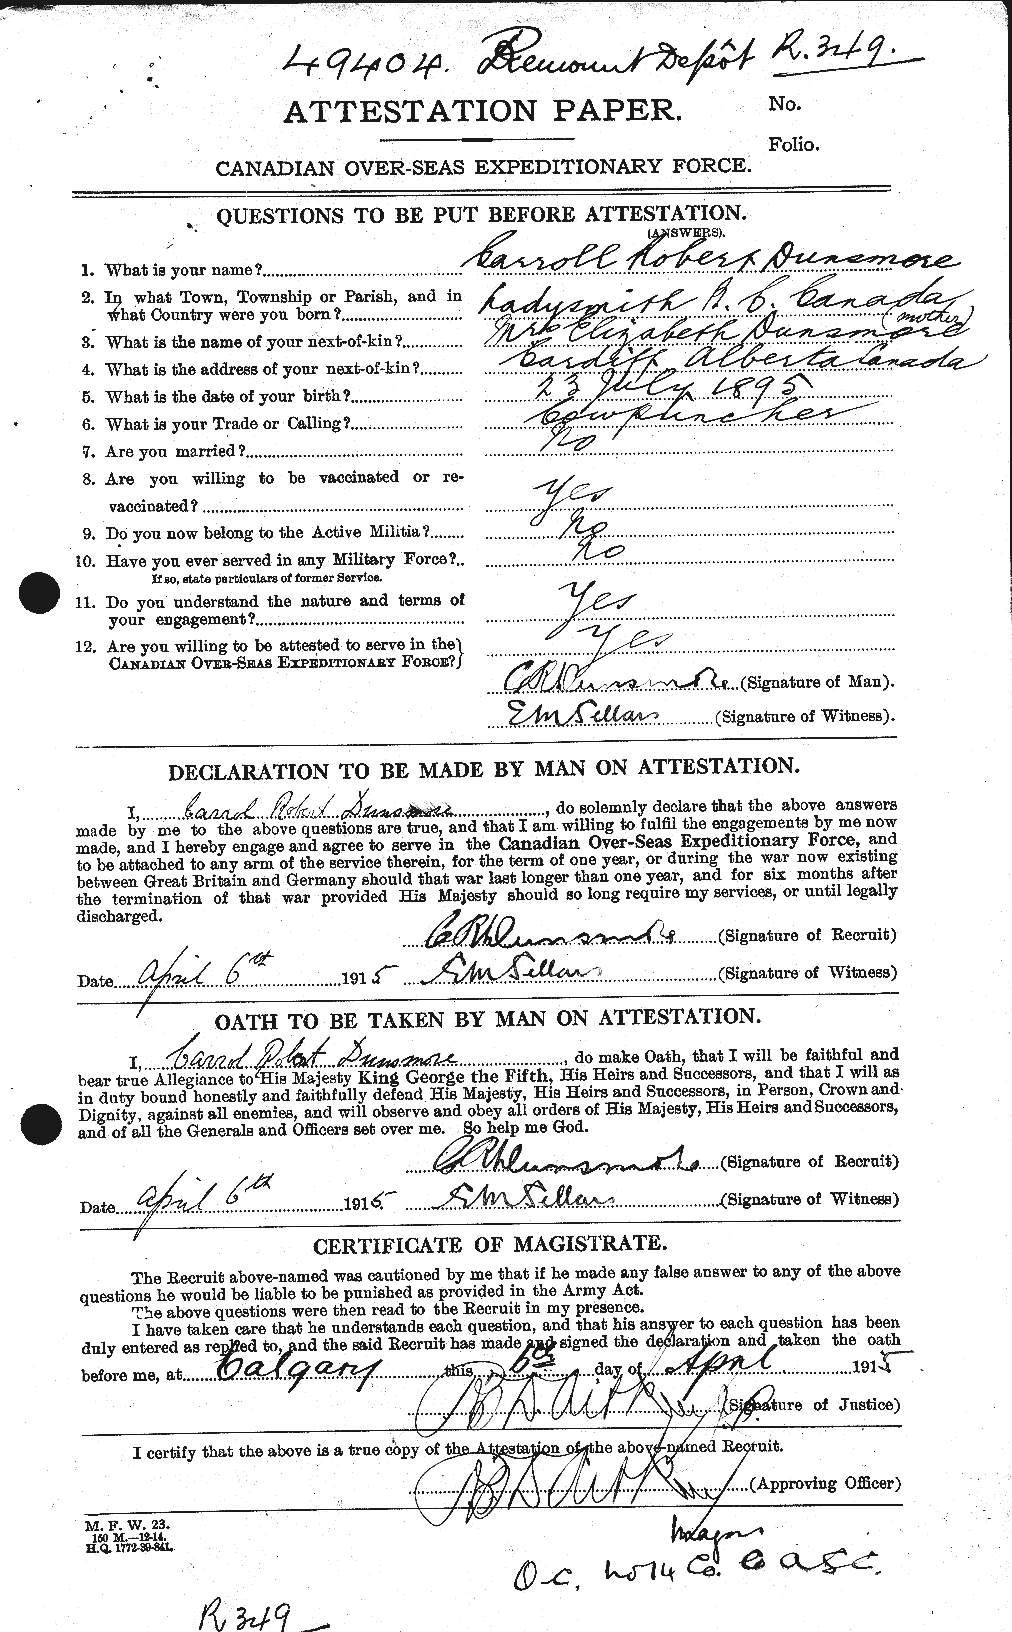 Dossiers du Personnel de la Première Guerre mondiale - CEC 304898a